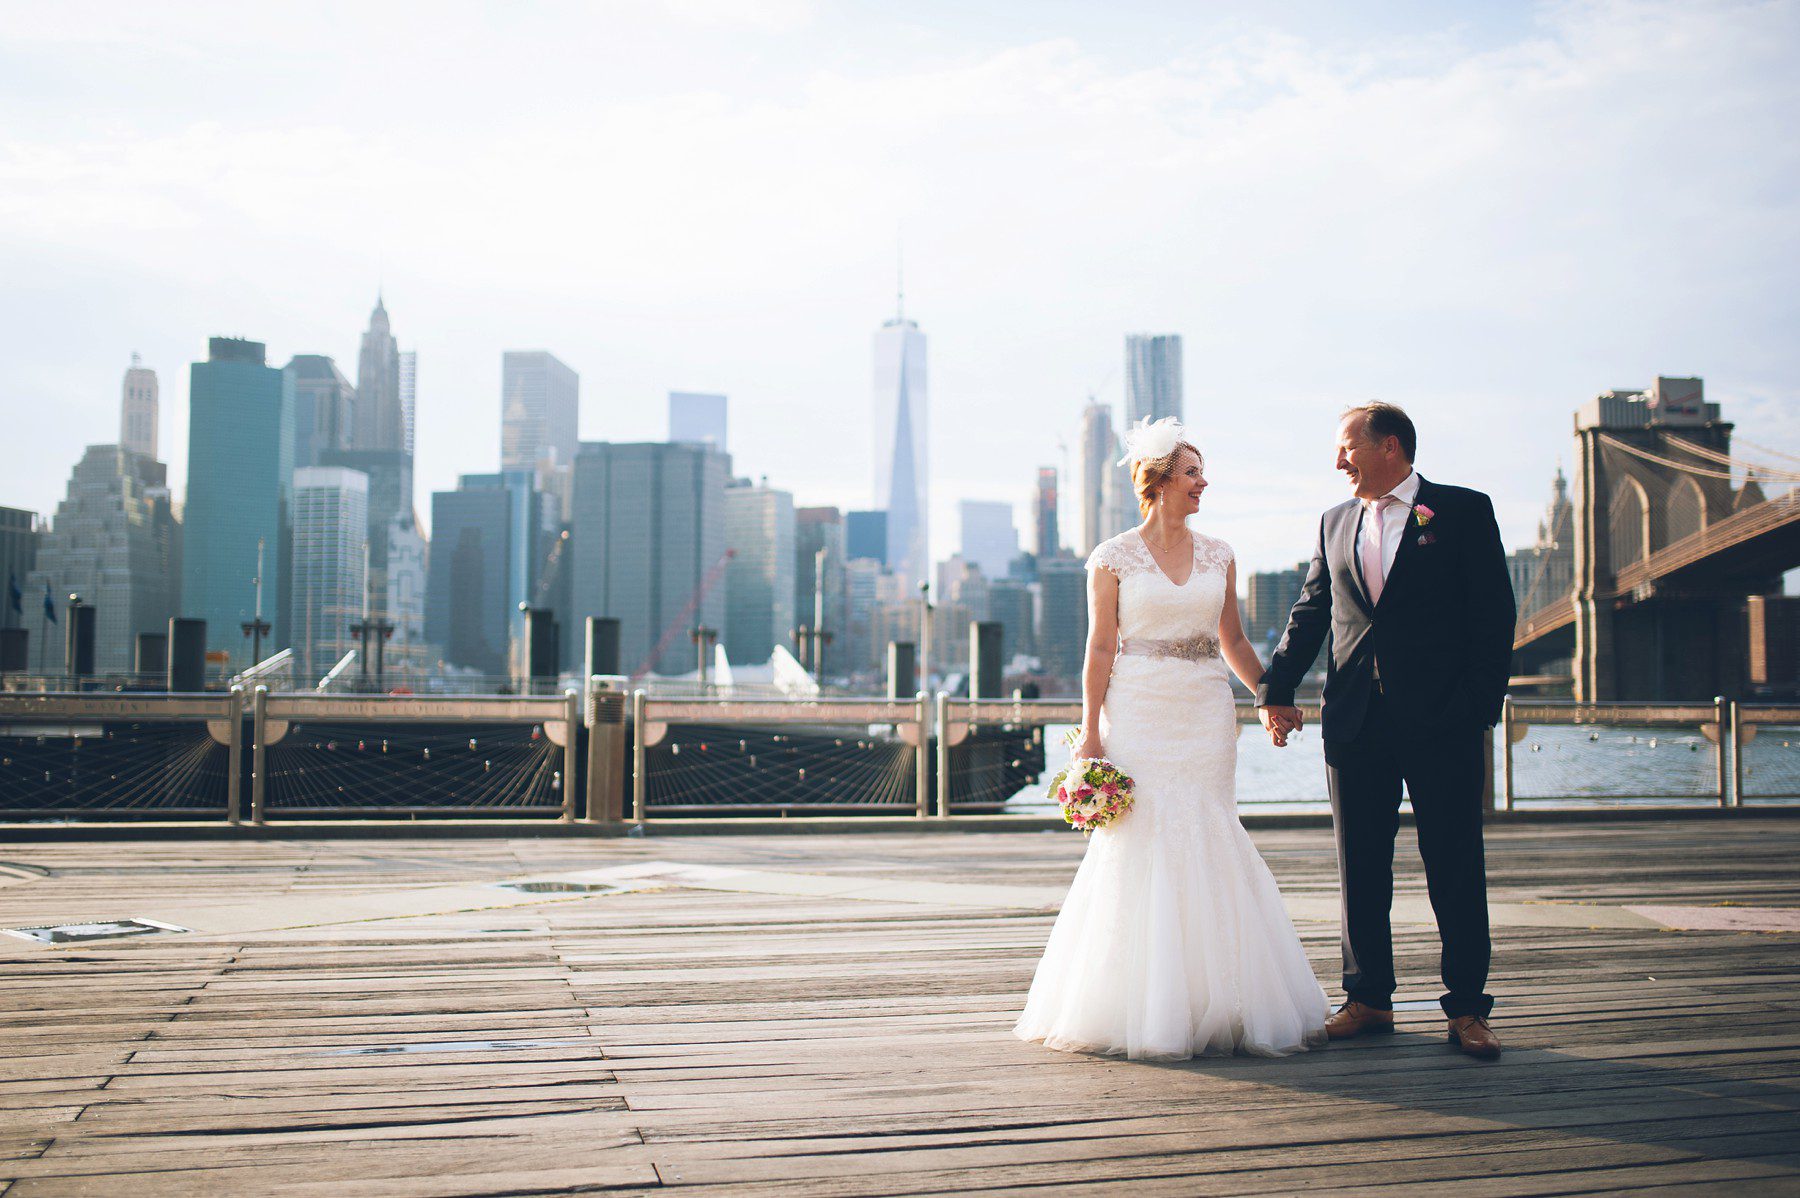 Brooklyn Bridge Park elopement in Dumbo